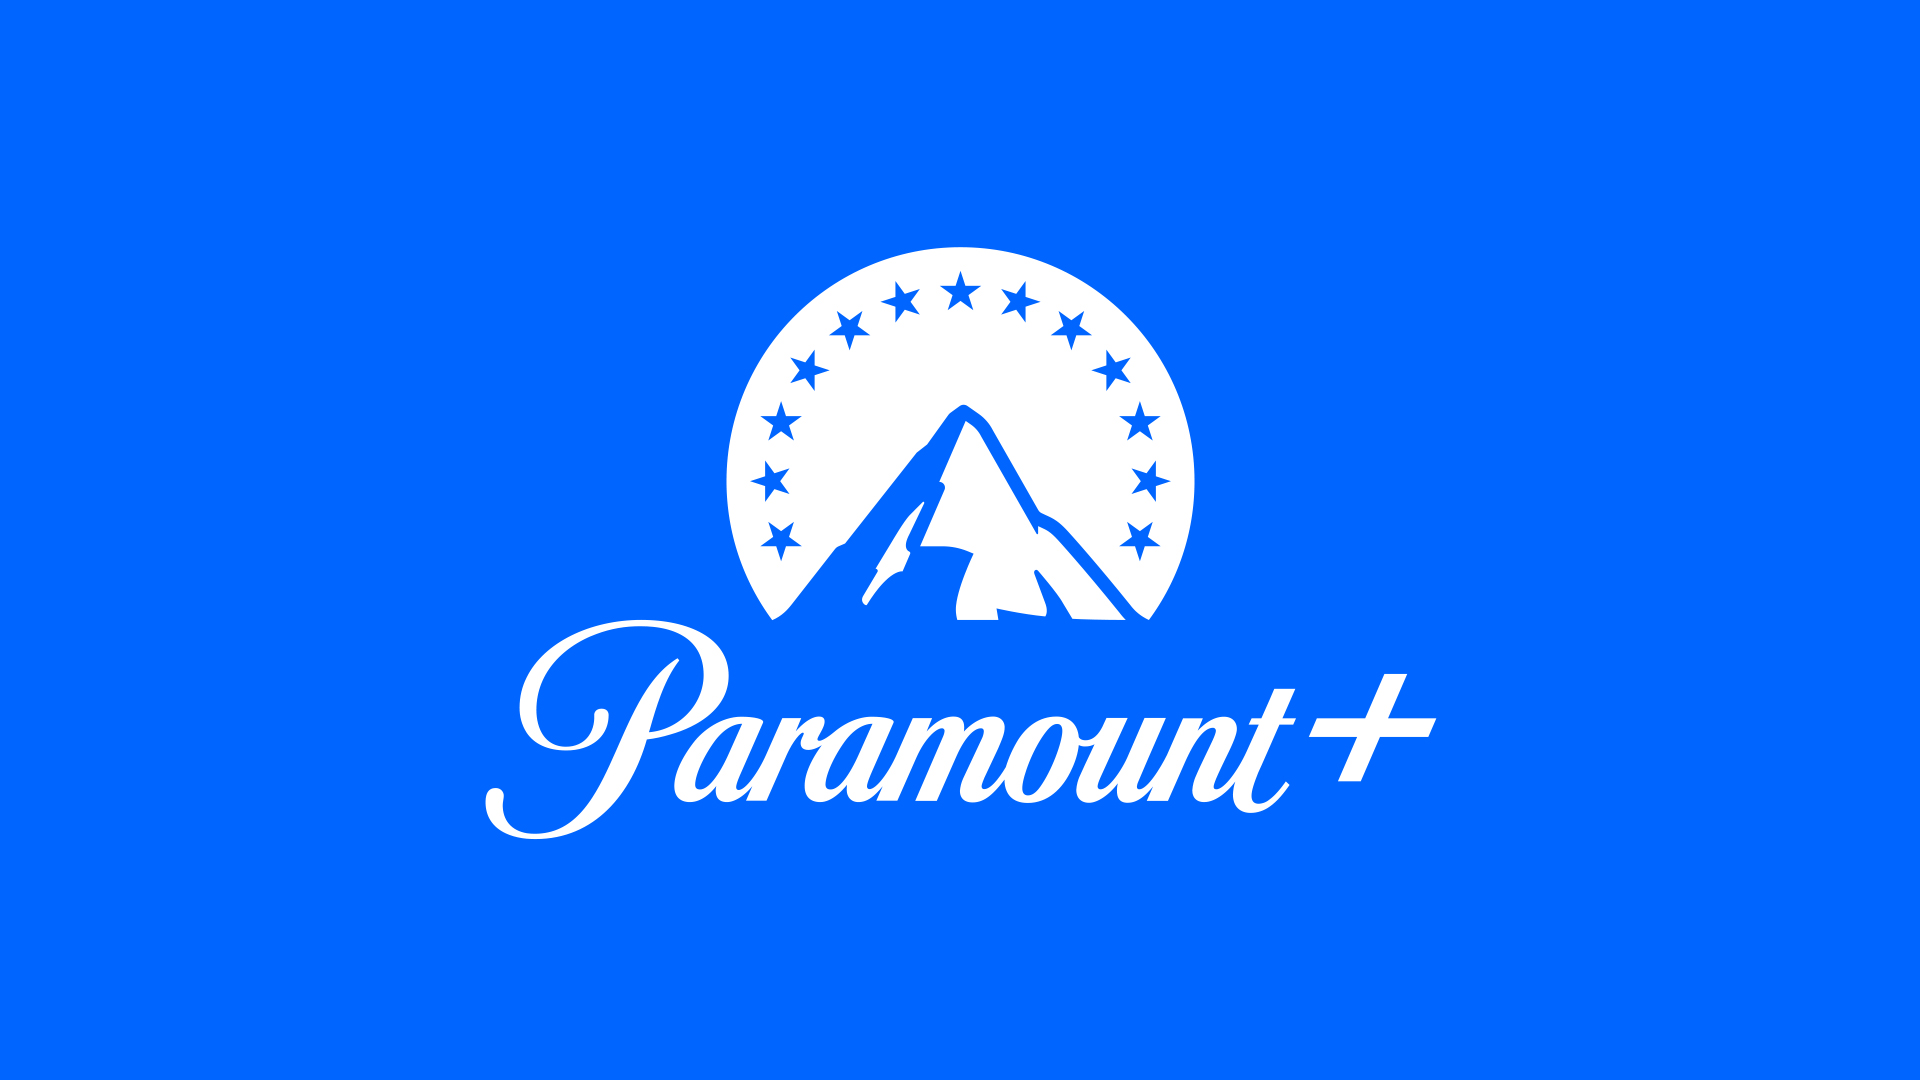 Paramount+ News on Paramount Plus.